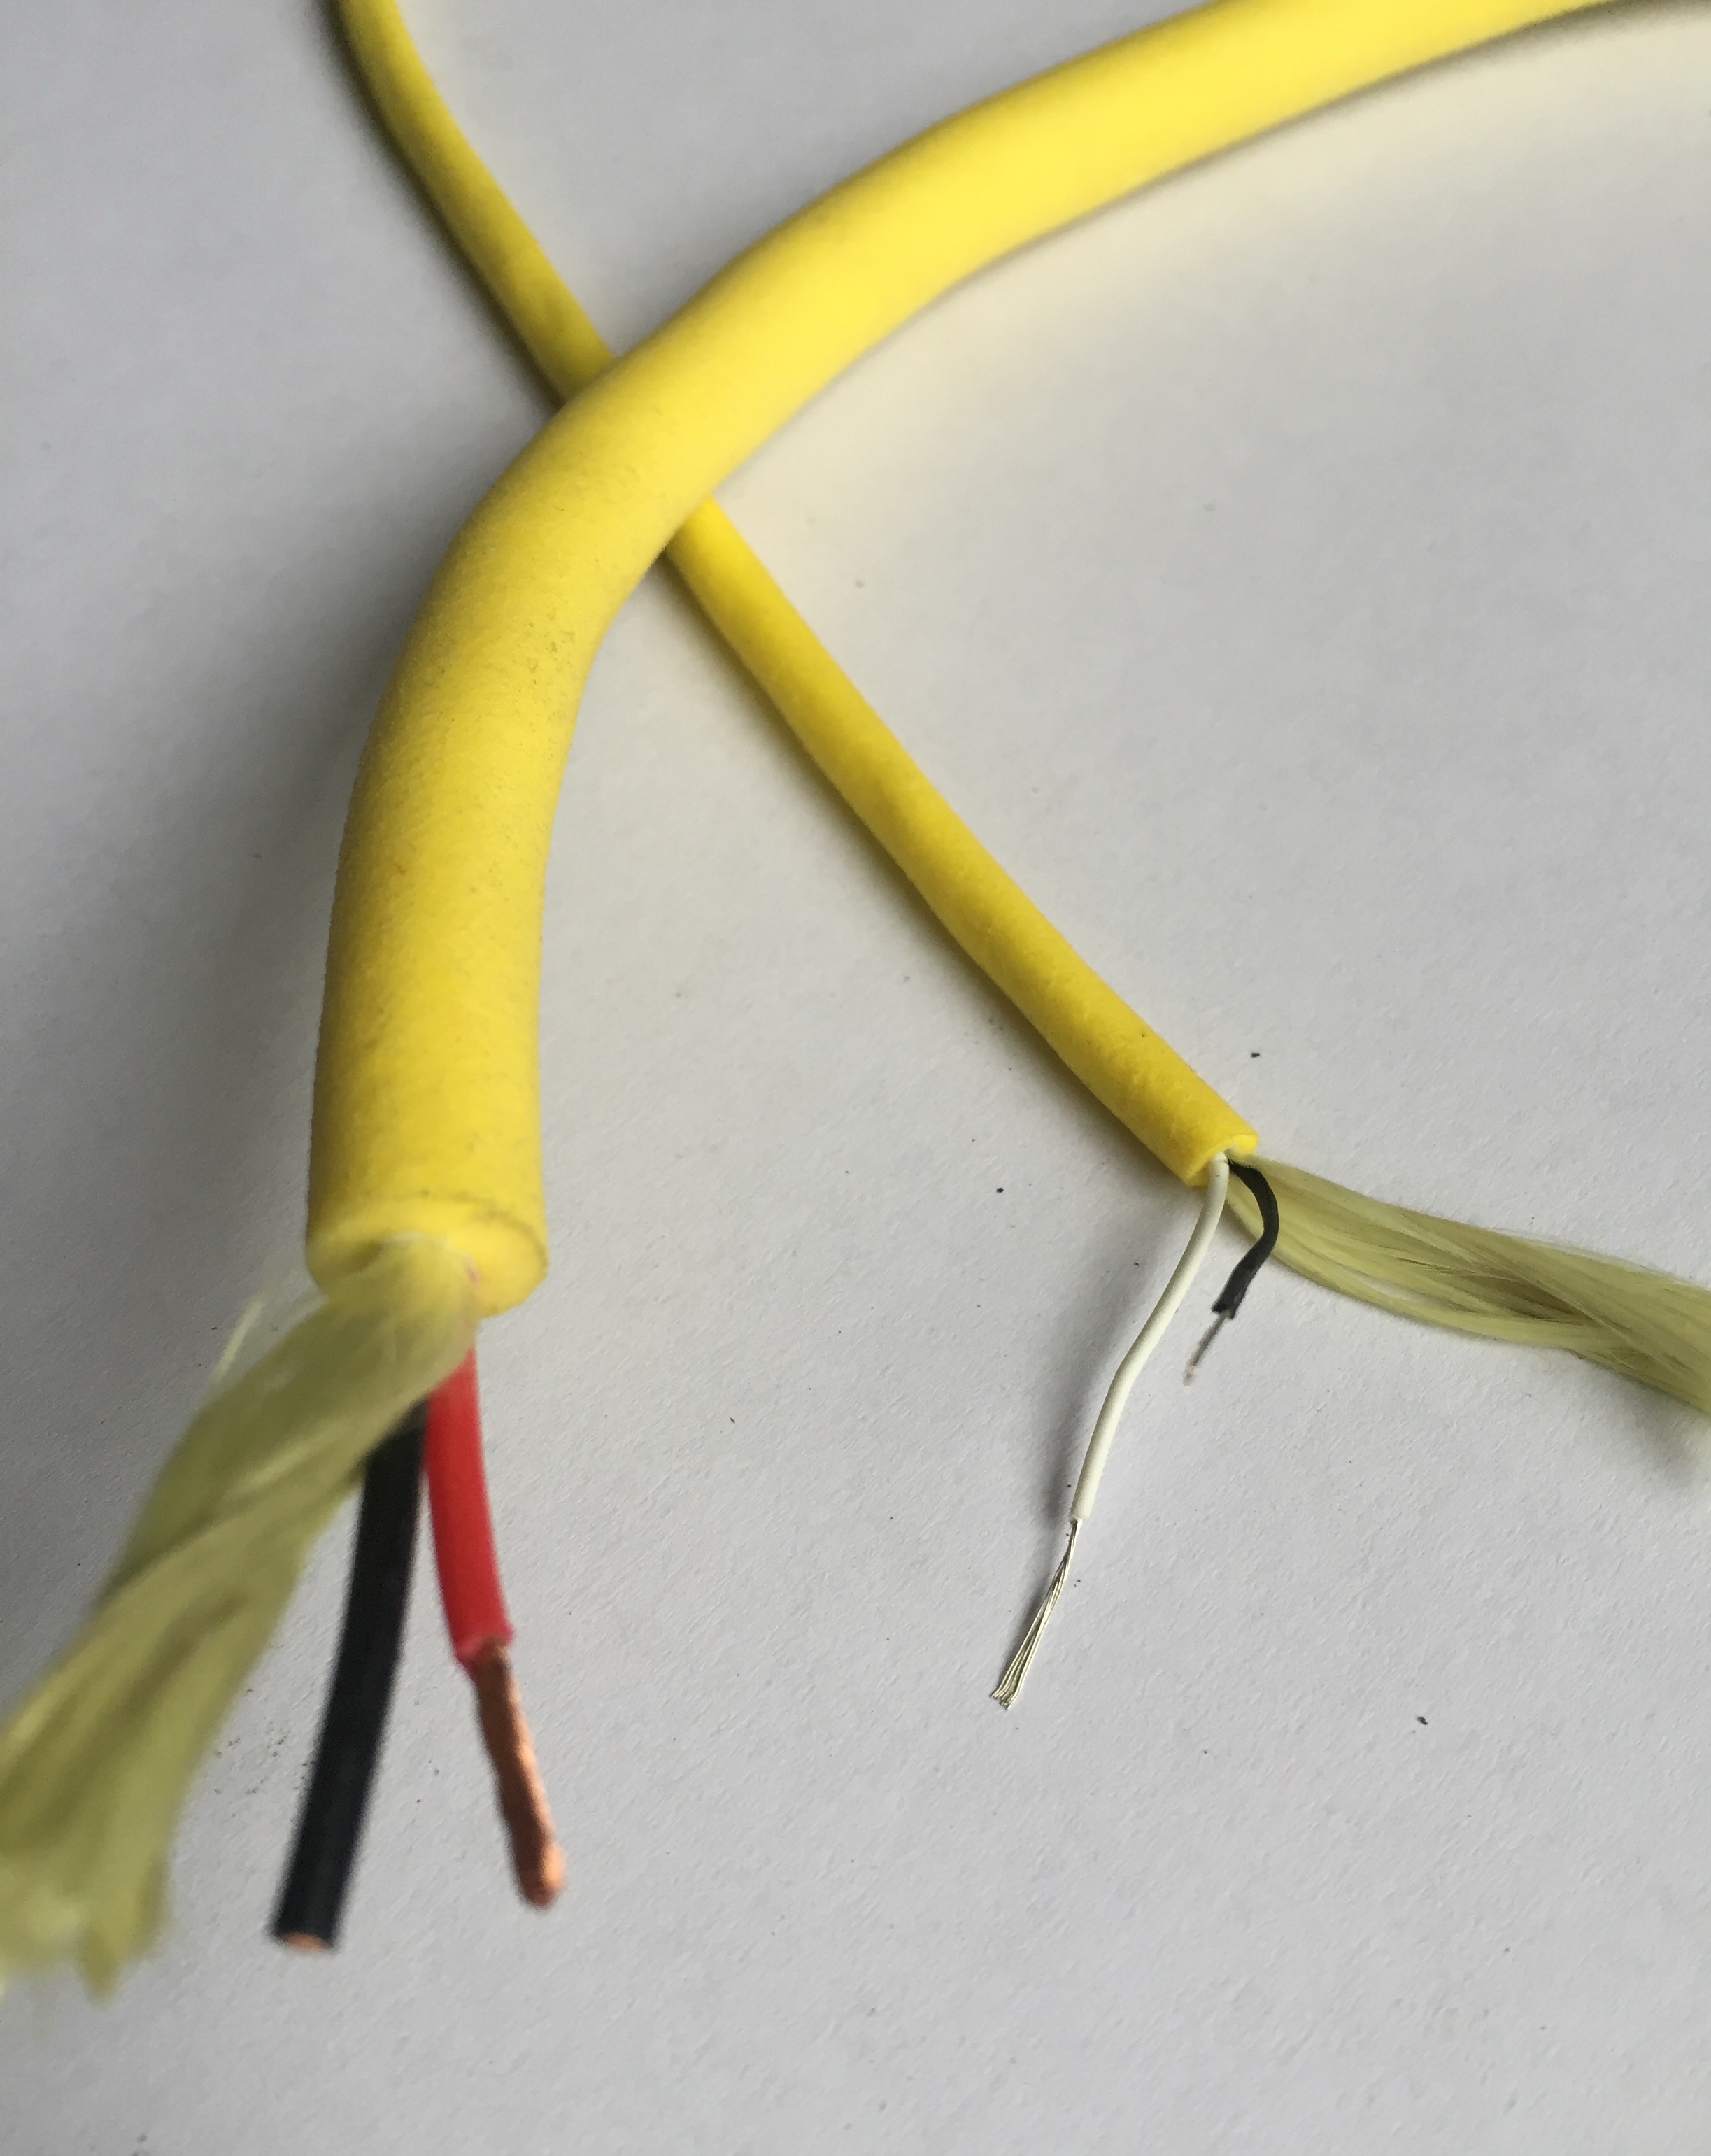 CF-TPU 海洋电缆 海洋电缆,耐腐蚀海洋电缆,防爆海洋电缆